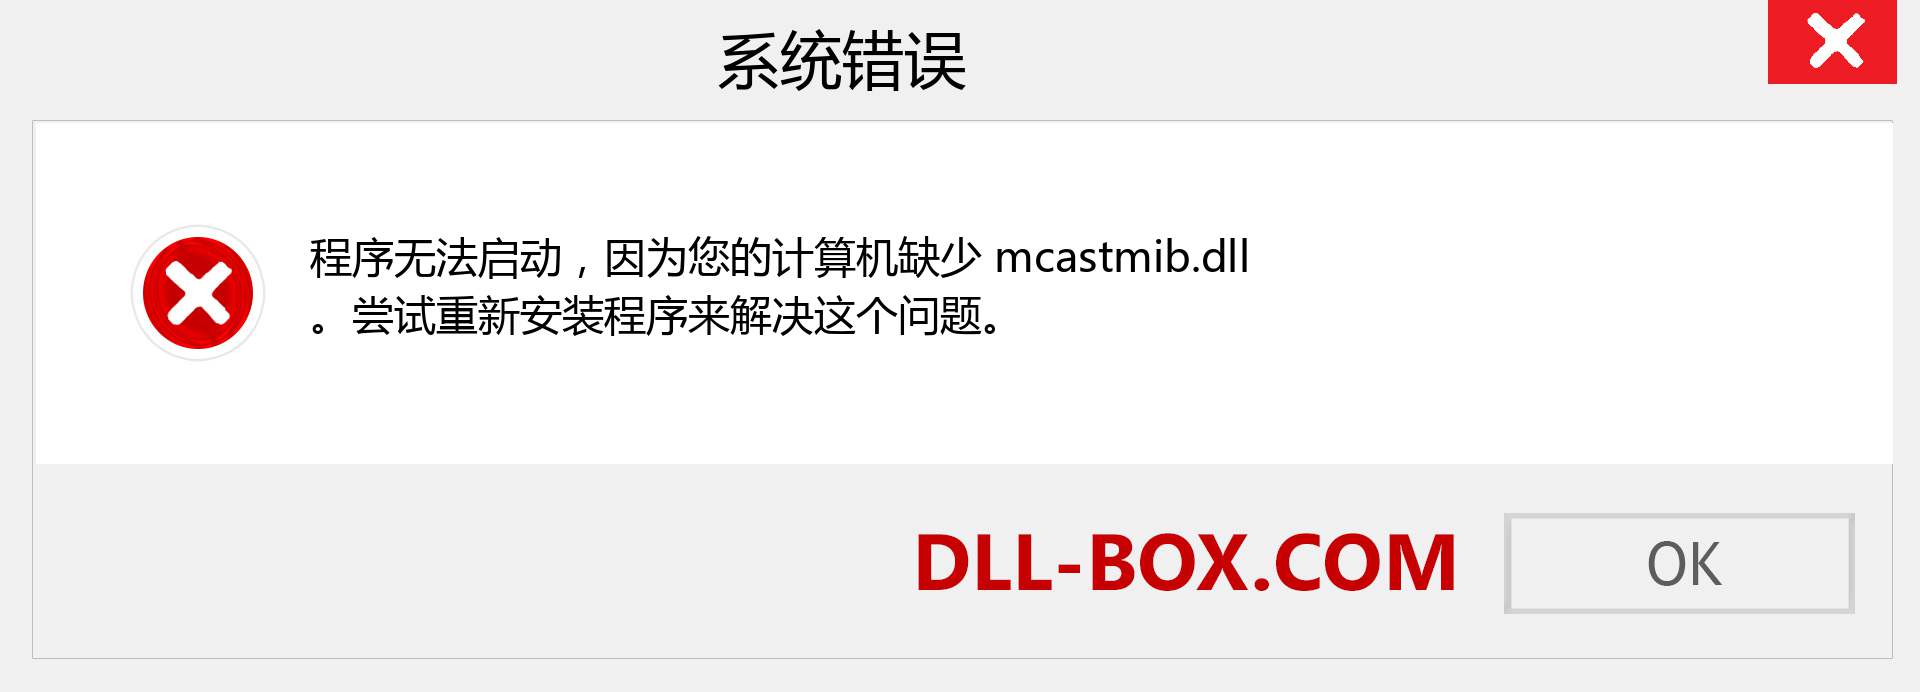 mcastmib.dll 文件丢失？。 适用于 Windows 7、8、10 的下载 - 修复 Windows、照片、图像上的 mcastmib dll 丢失错误